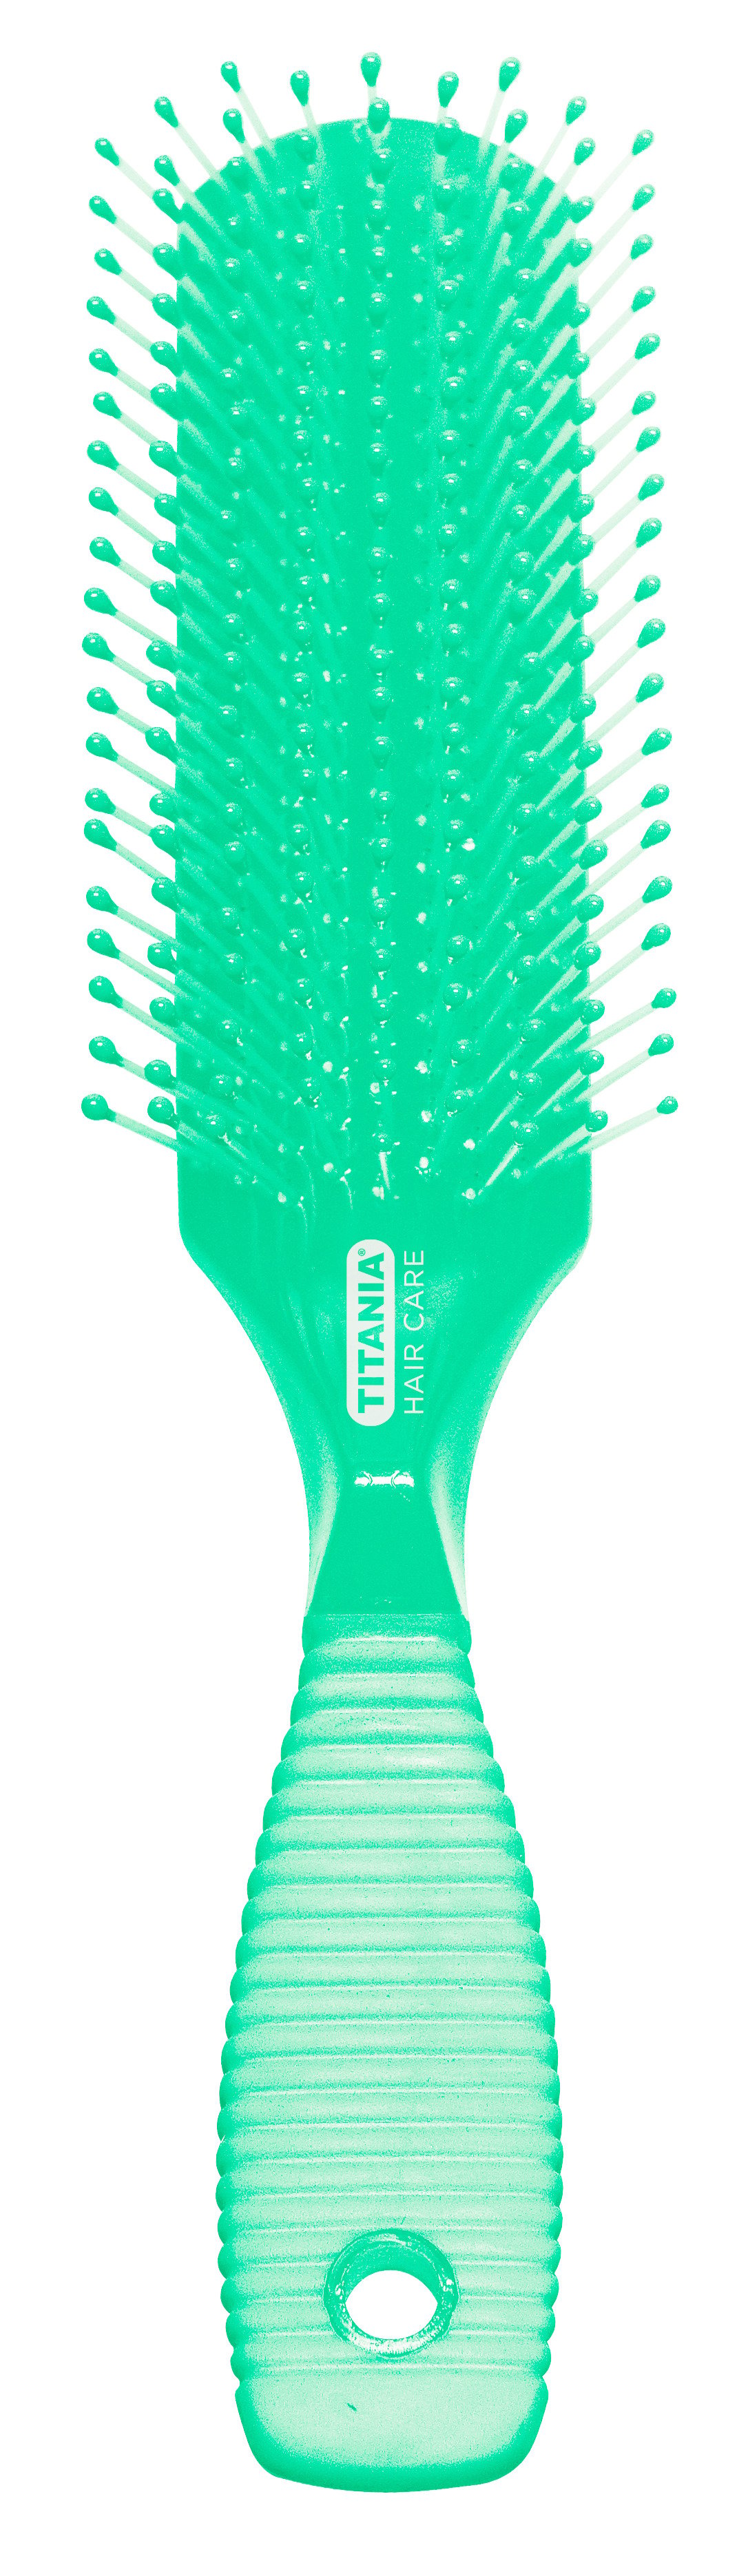 Щітка для волосся Titania масажна, 9 рядів, зелений (1829 зел) - фото 1